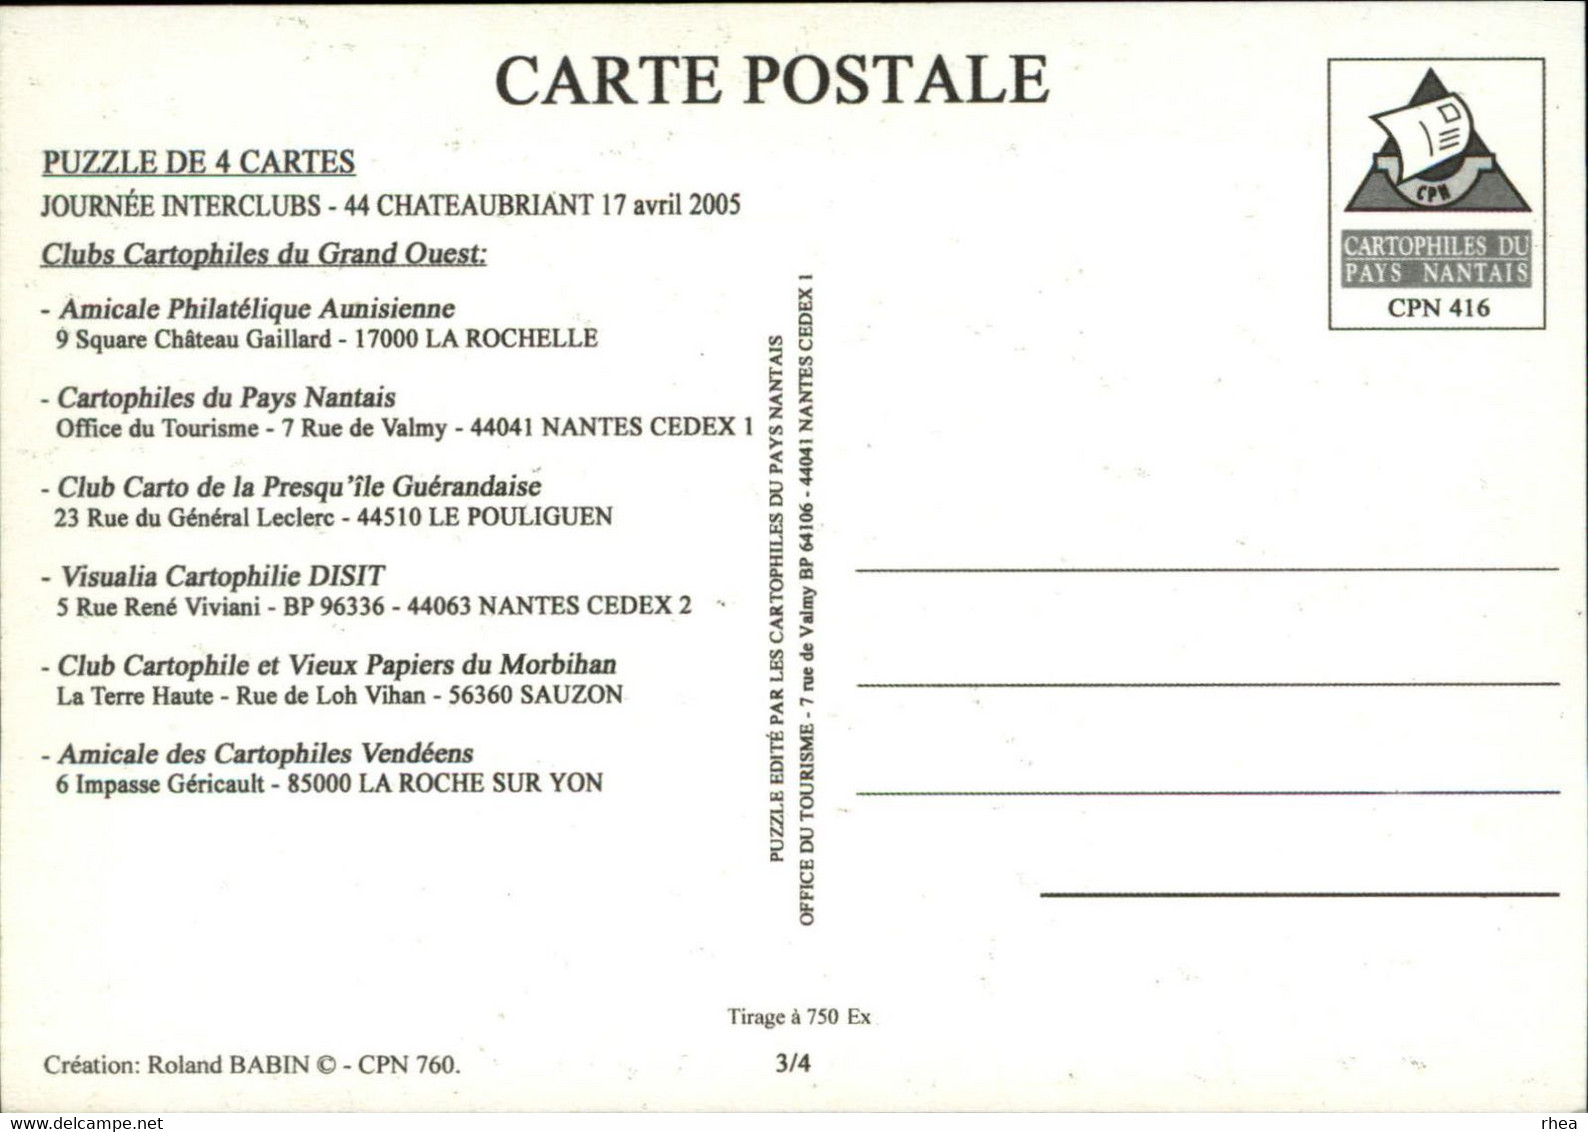 44 - NANTES - Châteaubriant - PUZZLE de 4 Cartes - Journées Interclubs du Grand Ouest - 2005